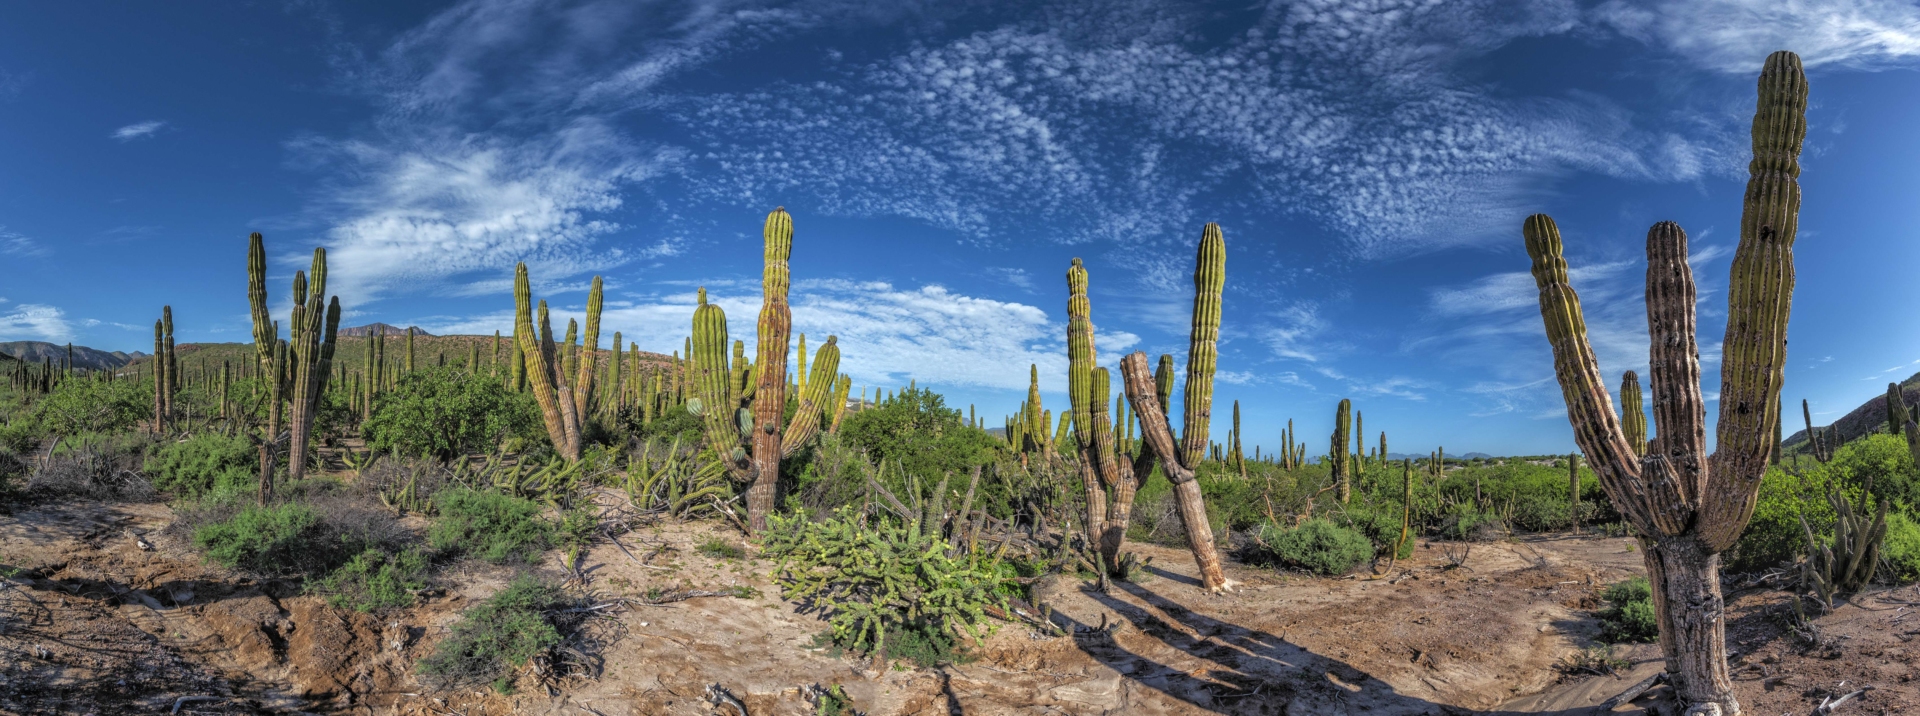 cactus-basse-californie